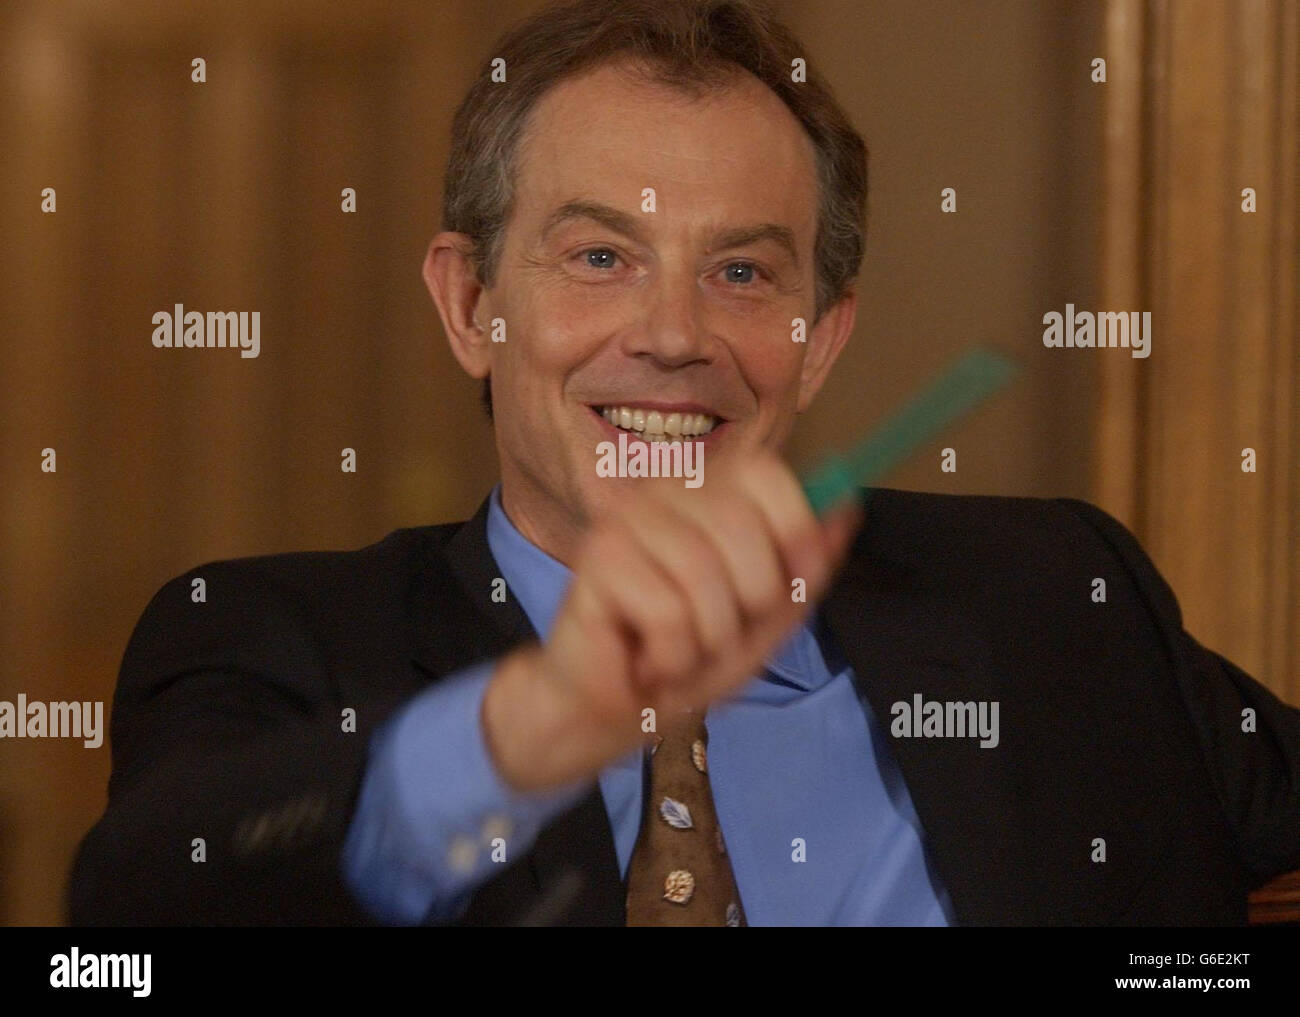 Der britische Premierminister Tony Blair spricht bei einer gemeinsamen Pressekonferenz mit dem Schatzkanzler Gordon Brown, Unseen, in der Downing Street 10 in London, nachdem er beschlossen hatte, den Beitritt Großbritanniens zur europäischen Einheitswährung zu verzögern. Stockfoto